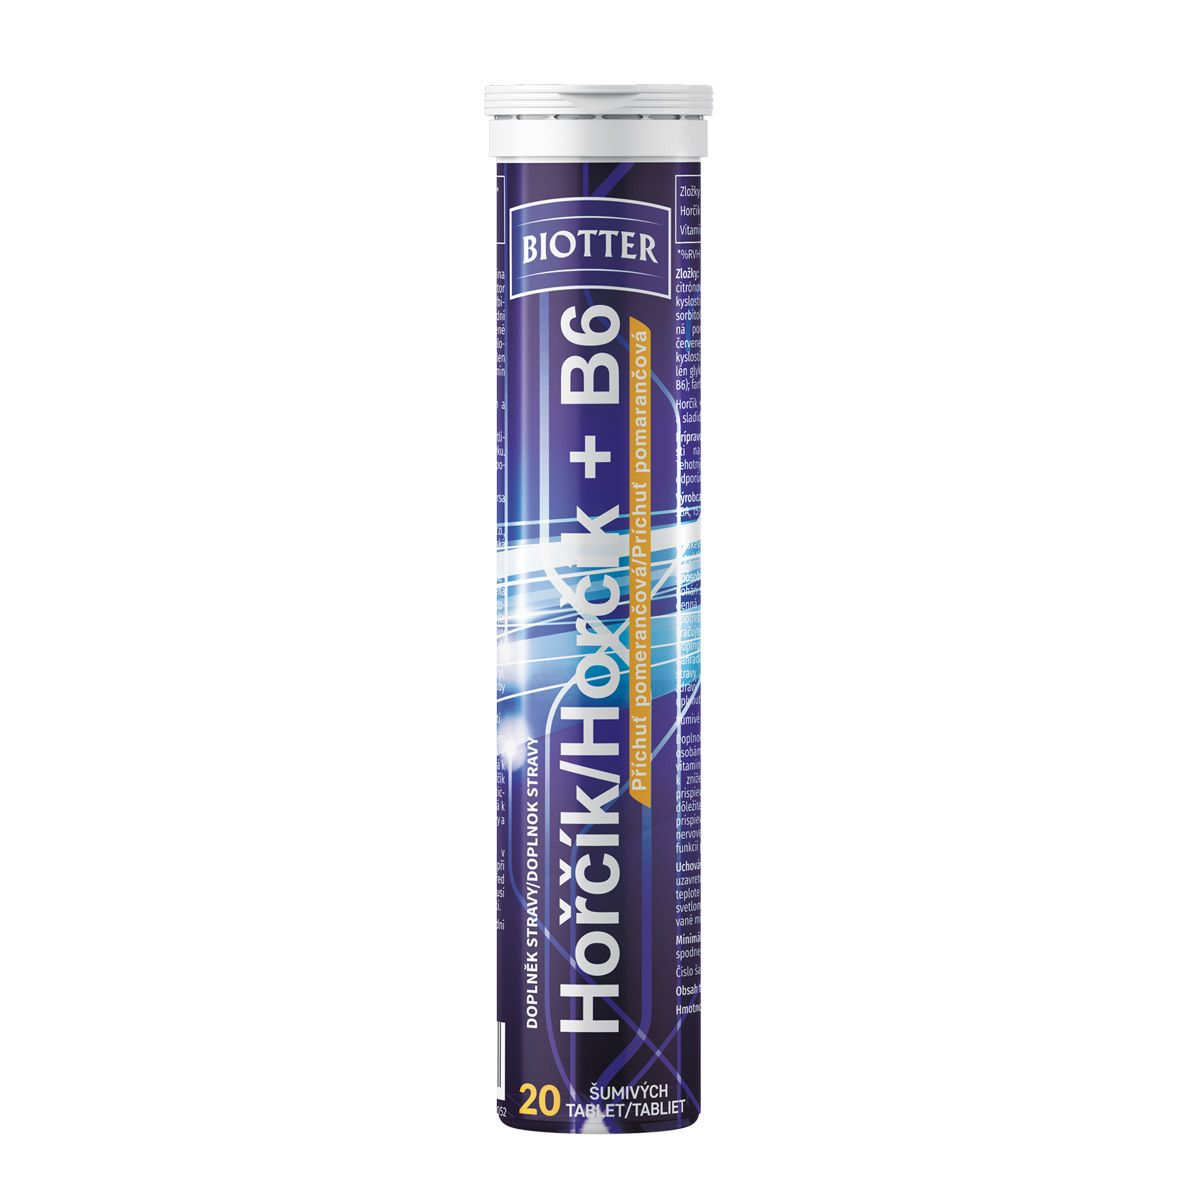 Biotter Hořčík s vitaminem B6 pomeranč 20 šumivých tablet Biotter